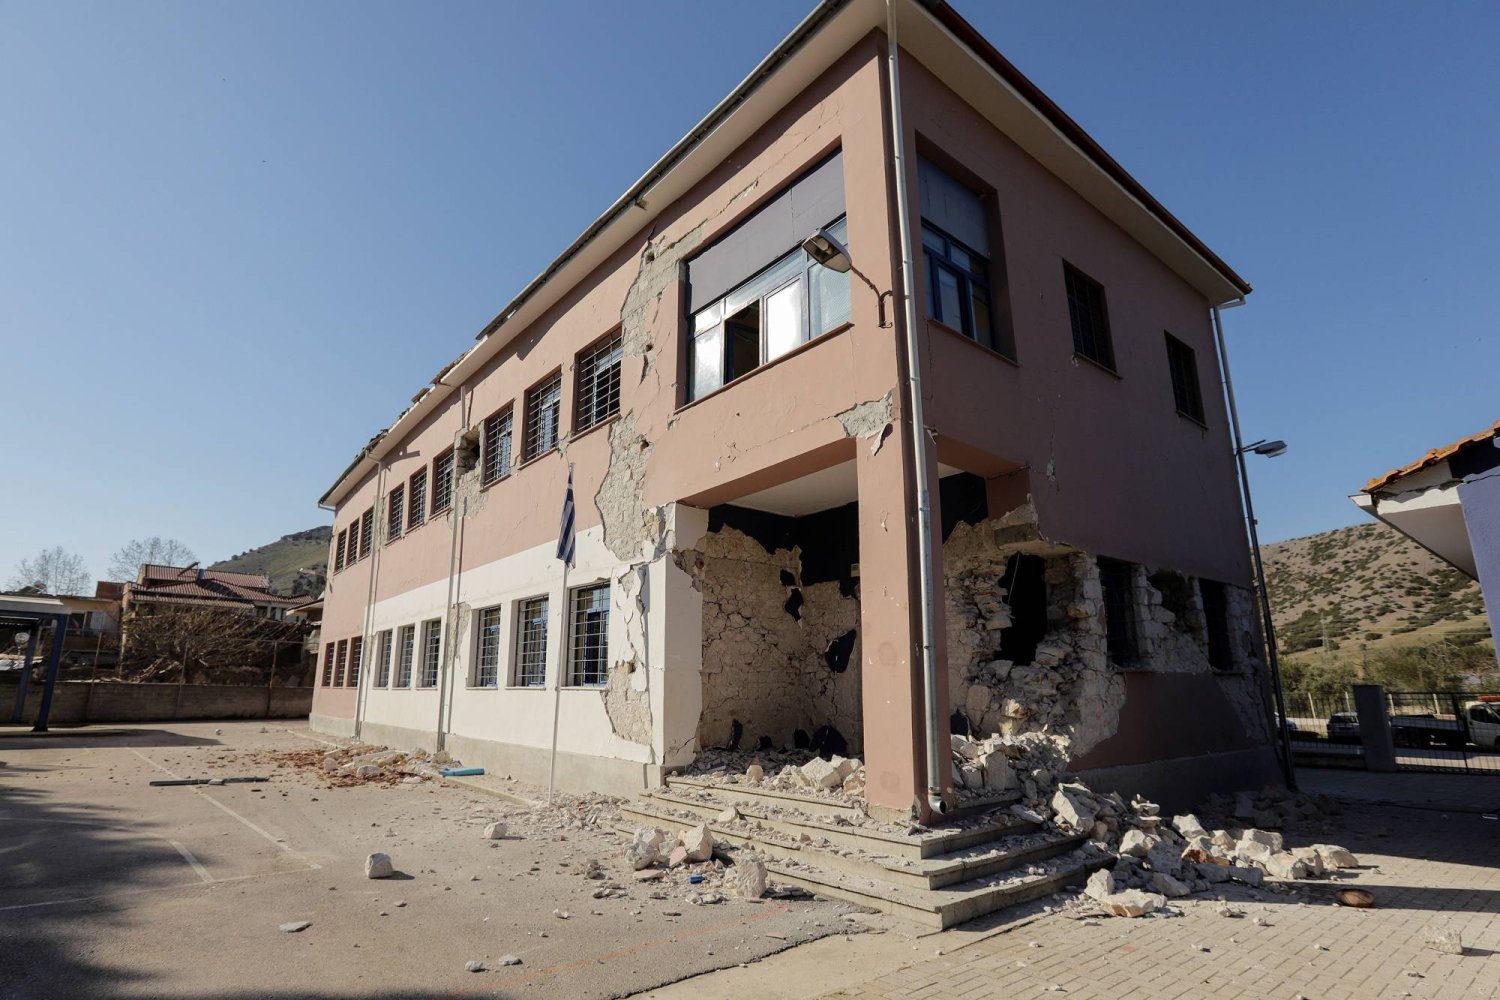 منظر لمنزل متضرر بعد زلزال في قرية داماسي بوسط اليونان في 3 مارس 2021 (رويترز)